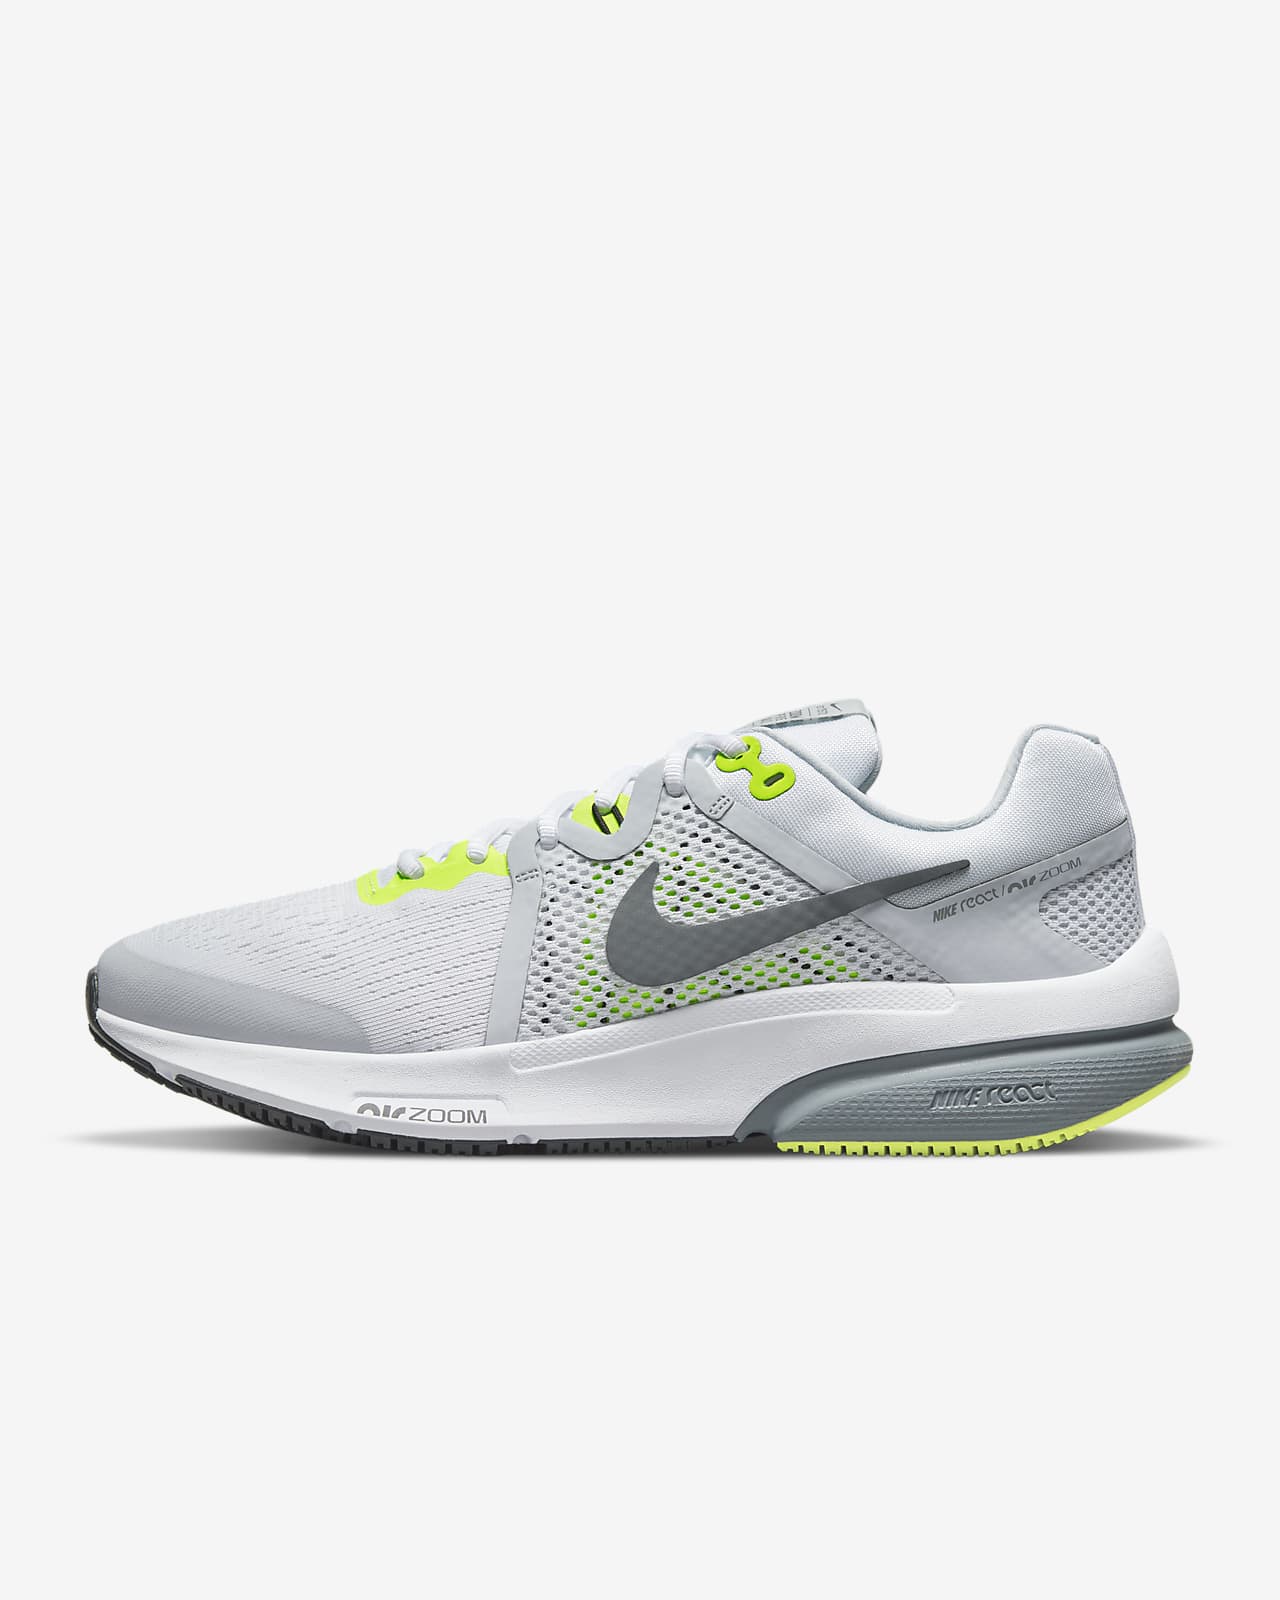 Calzado de running para hombre Nike Zoom Prevail. Nike.com كم سعودي